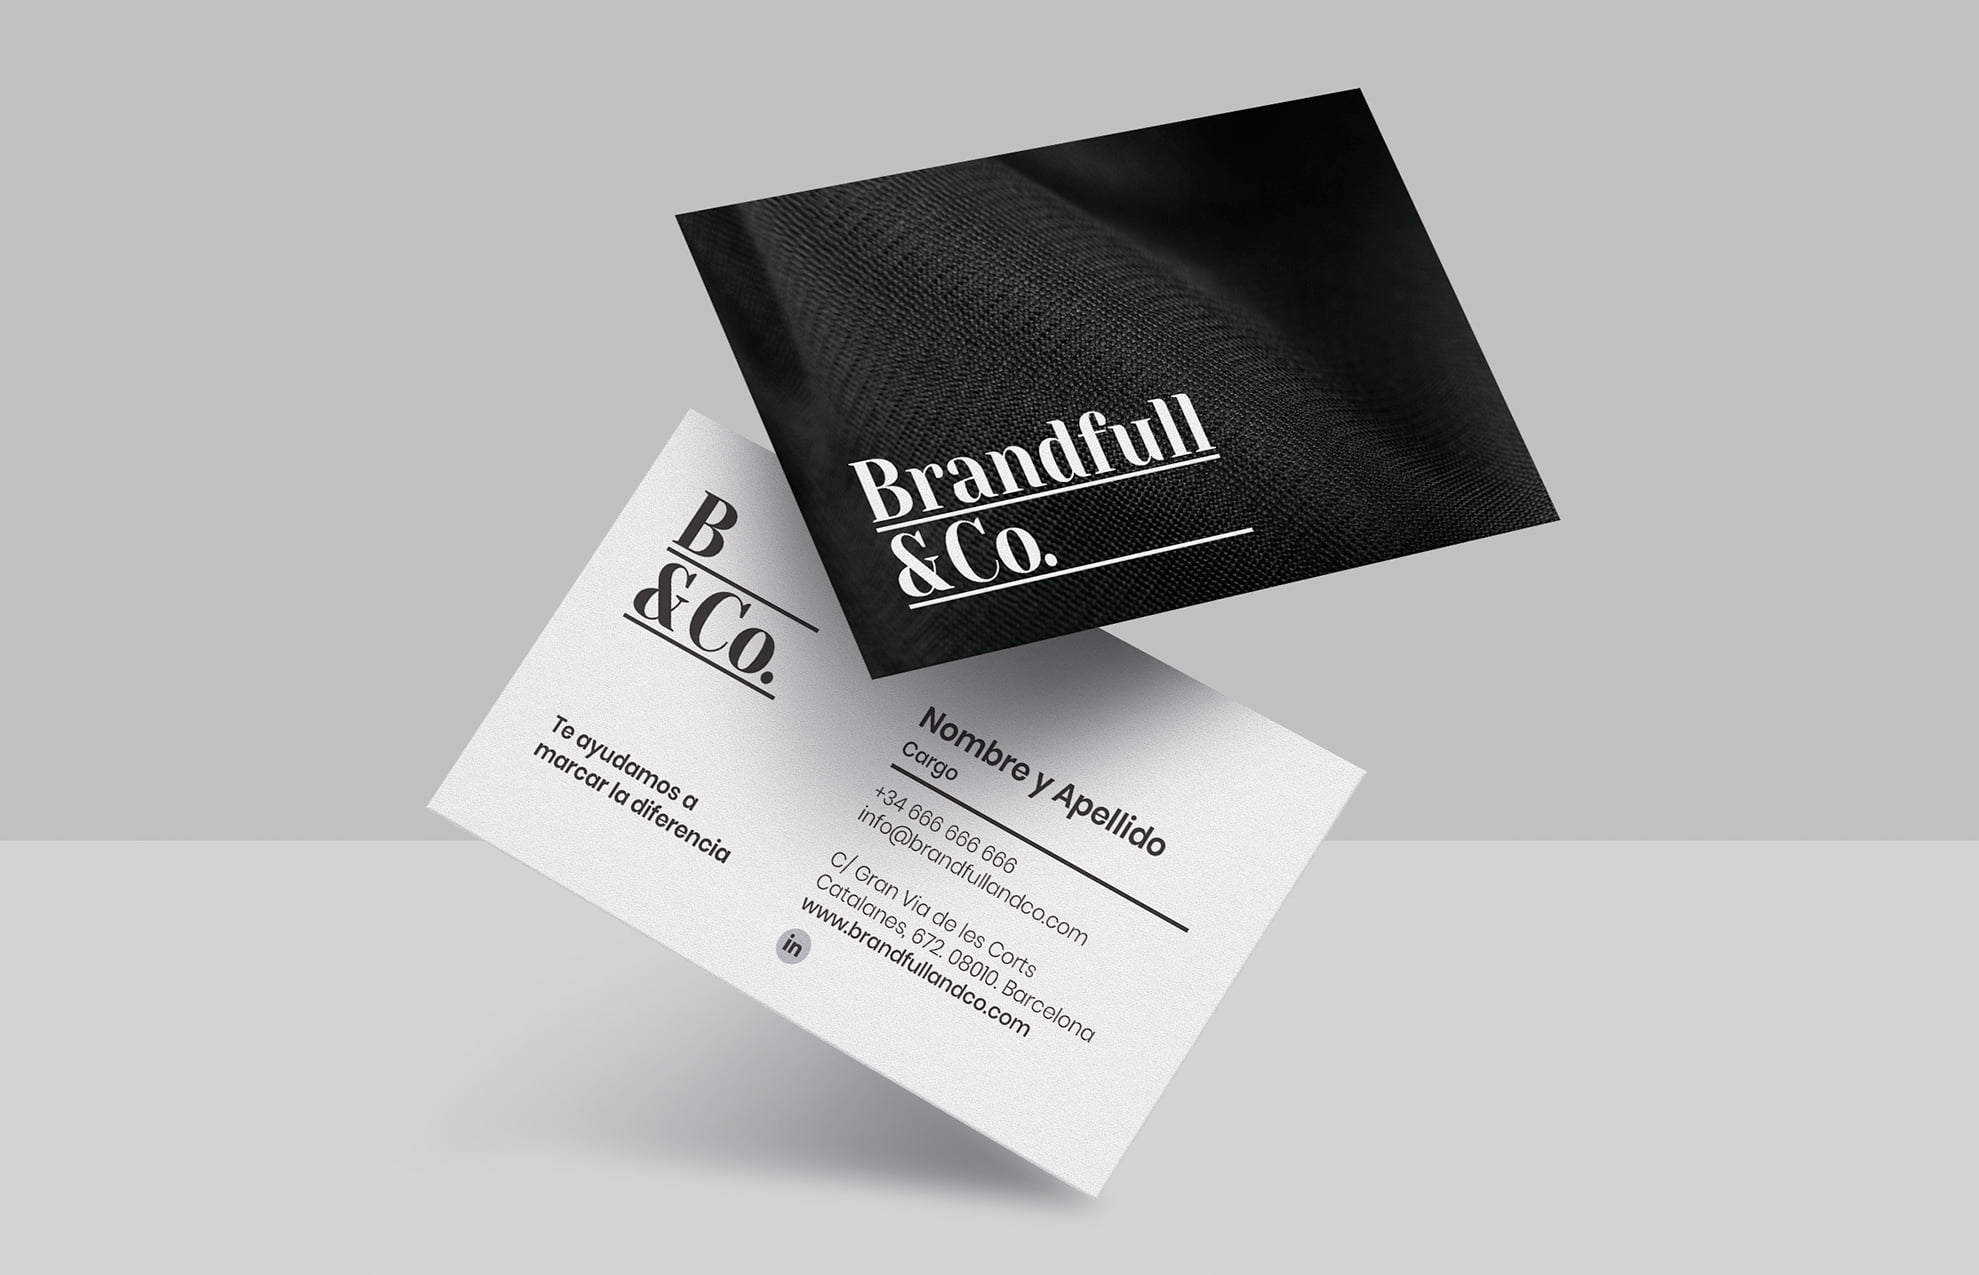 diseno targeta comercial moda - Brandfull&Co, un proyecto integral de diseño